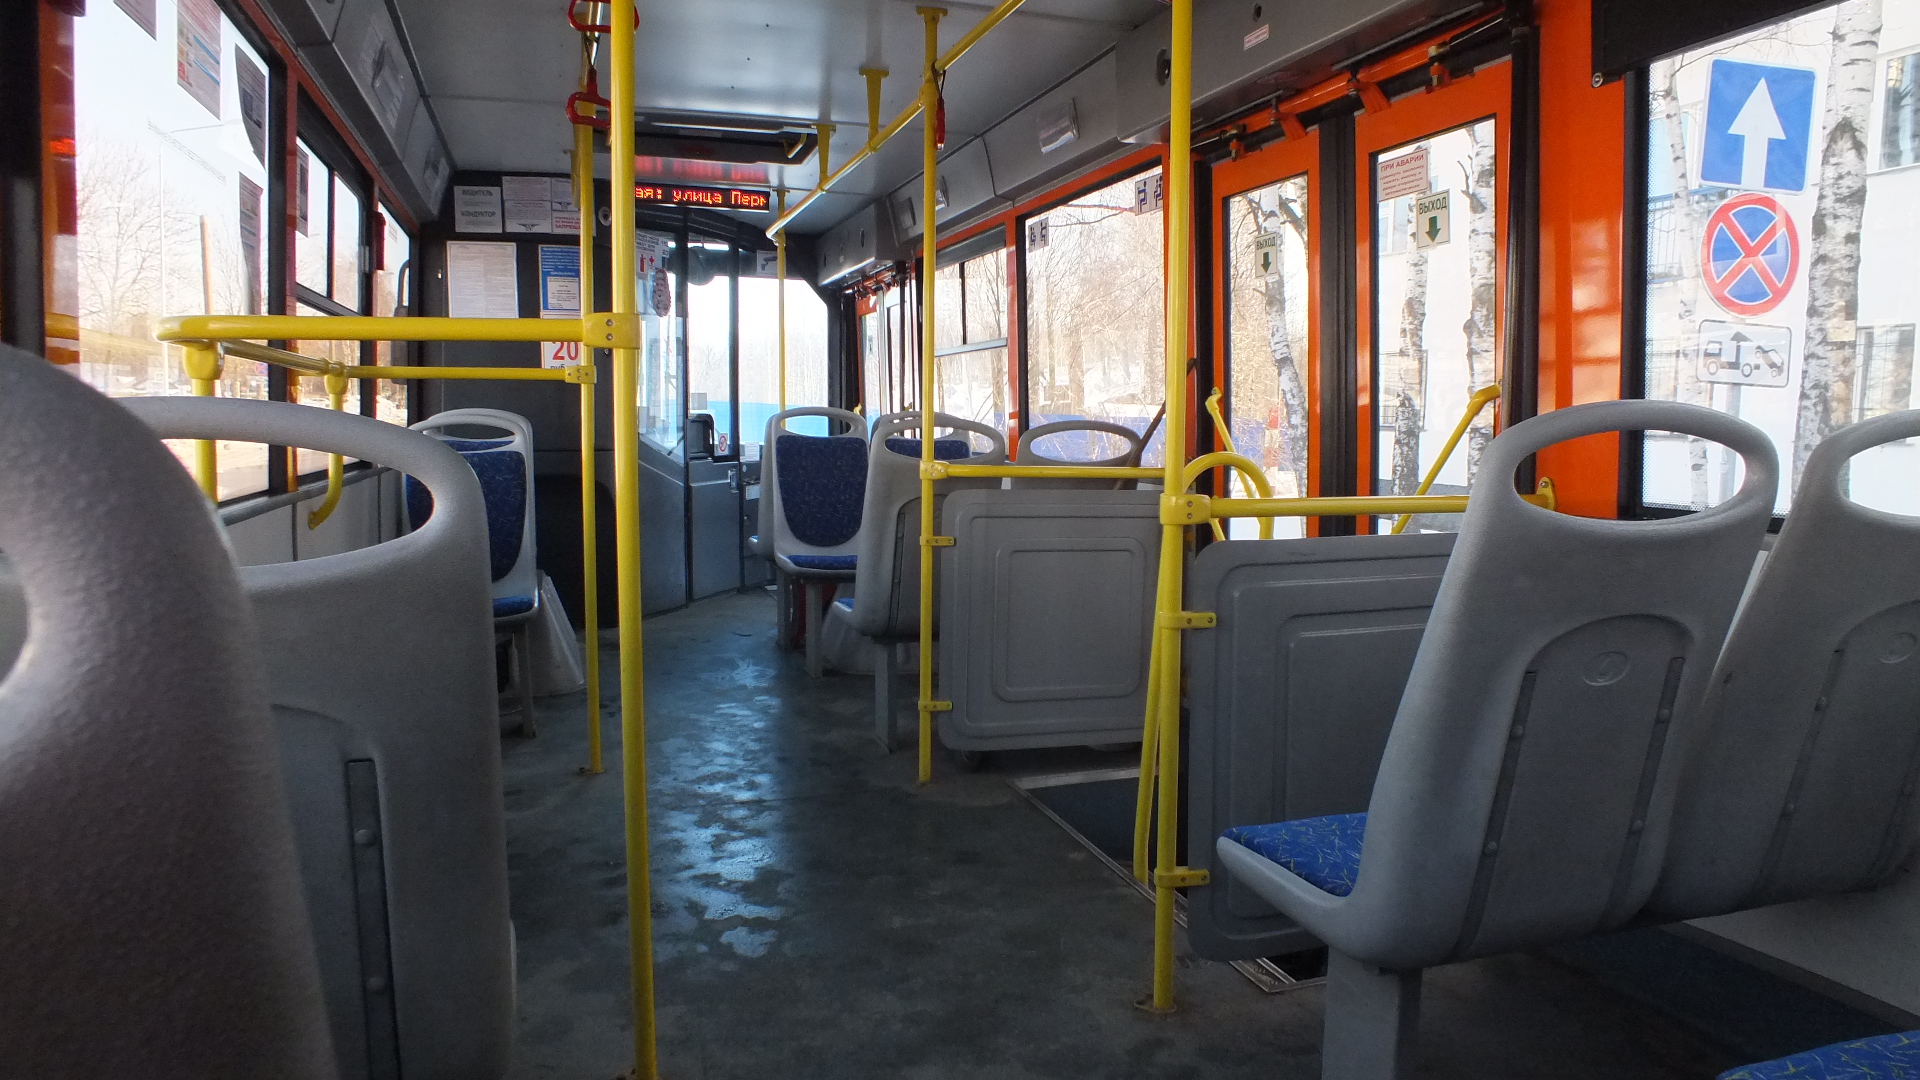 Женщина получила травму из-за «резкого» водителя автобуса в Московском районе